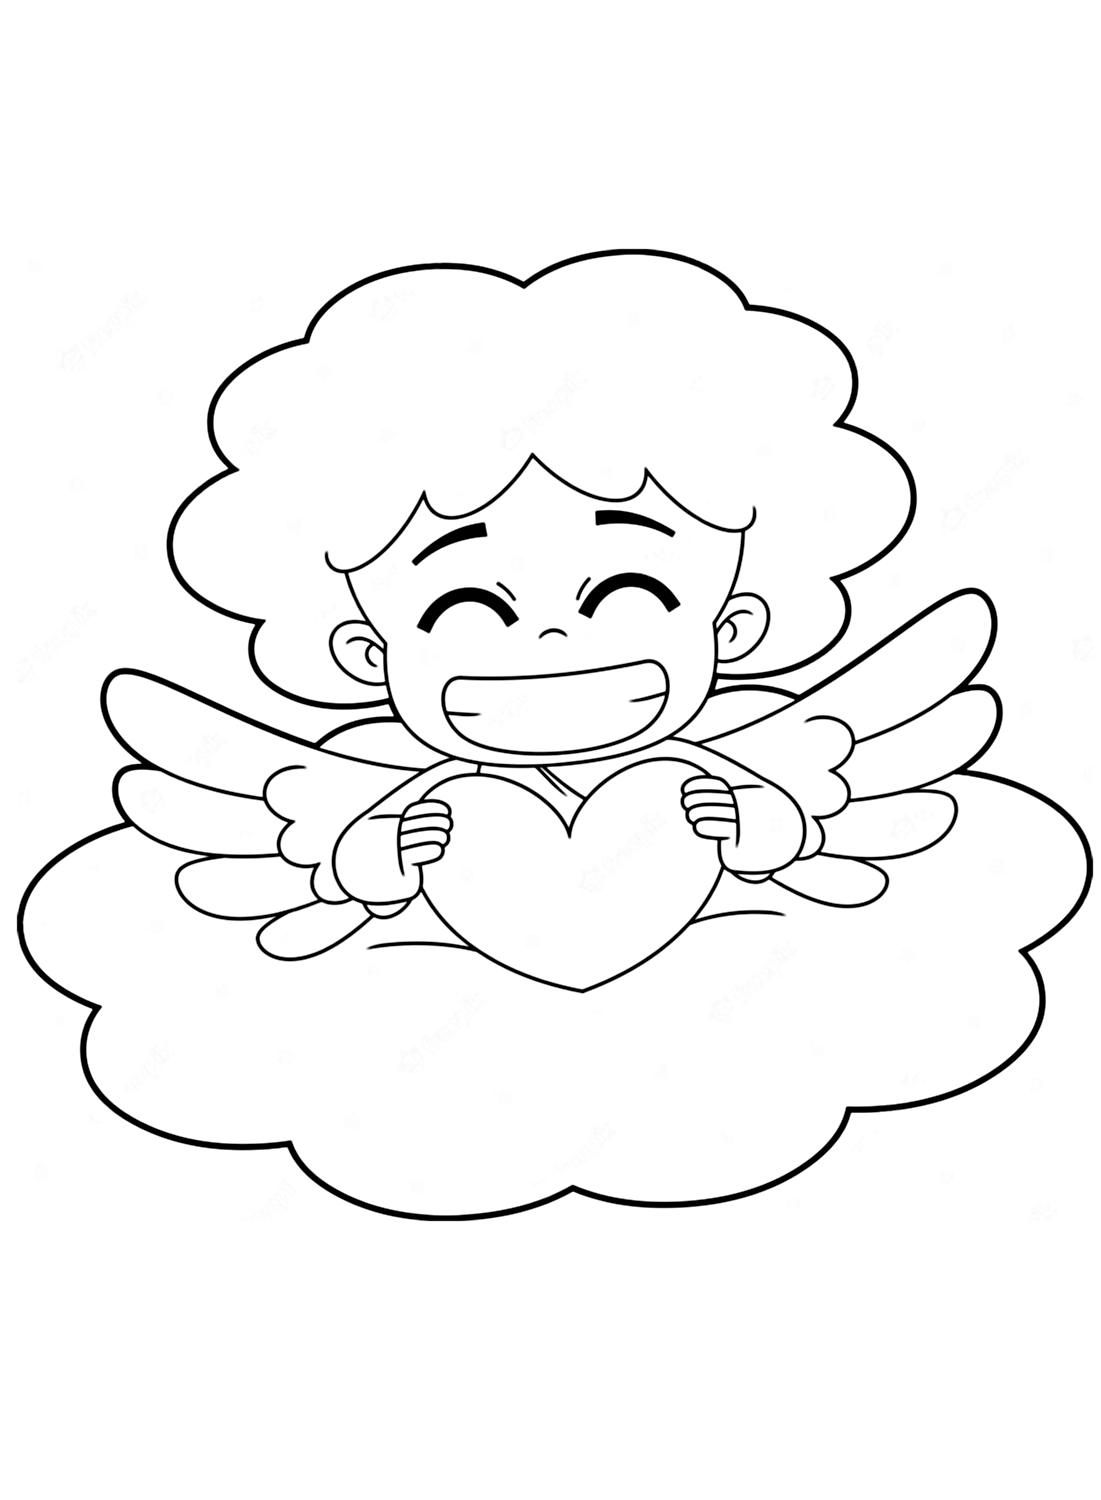 صفحة تلوين ملاك مبتسم من ملاك